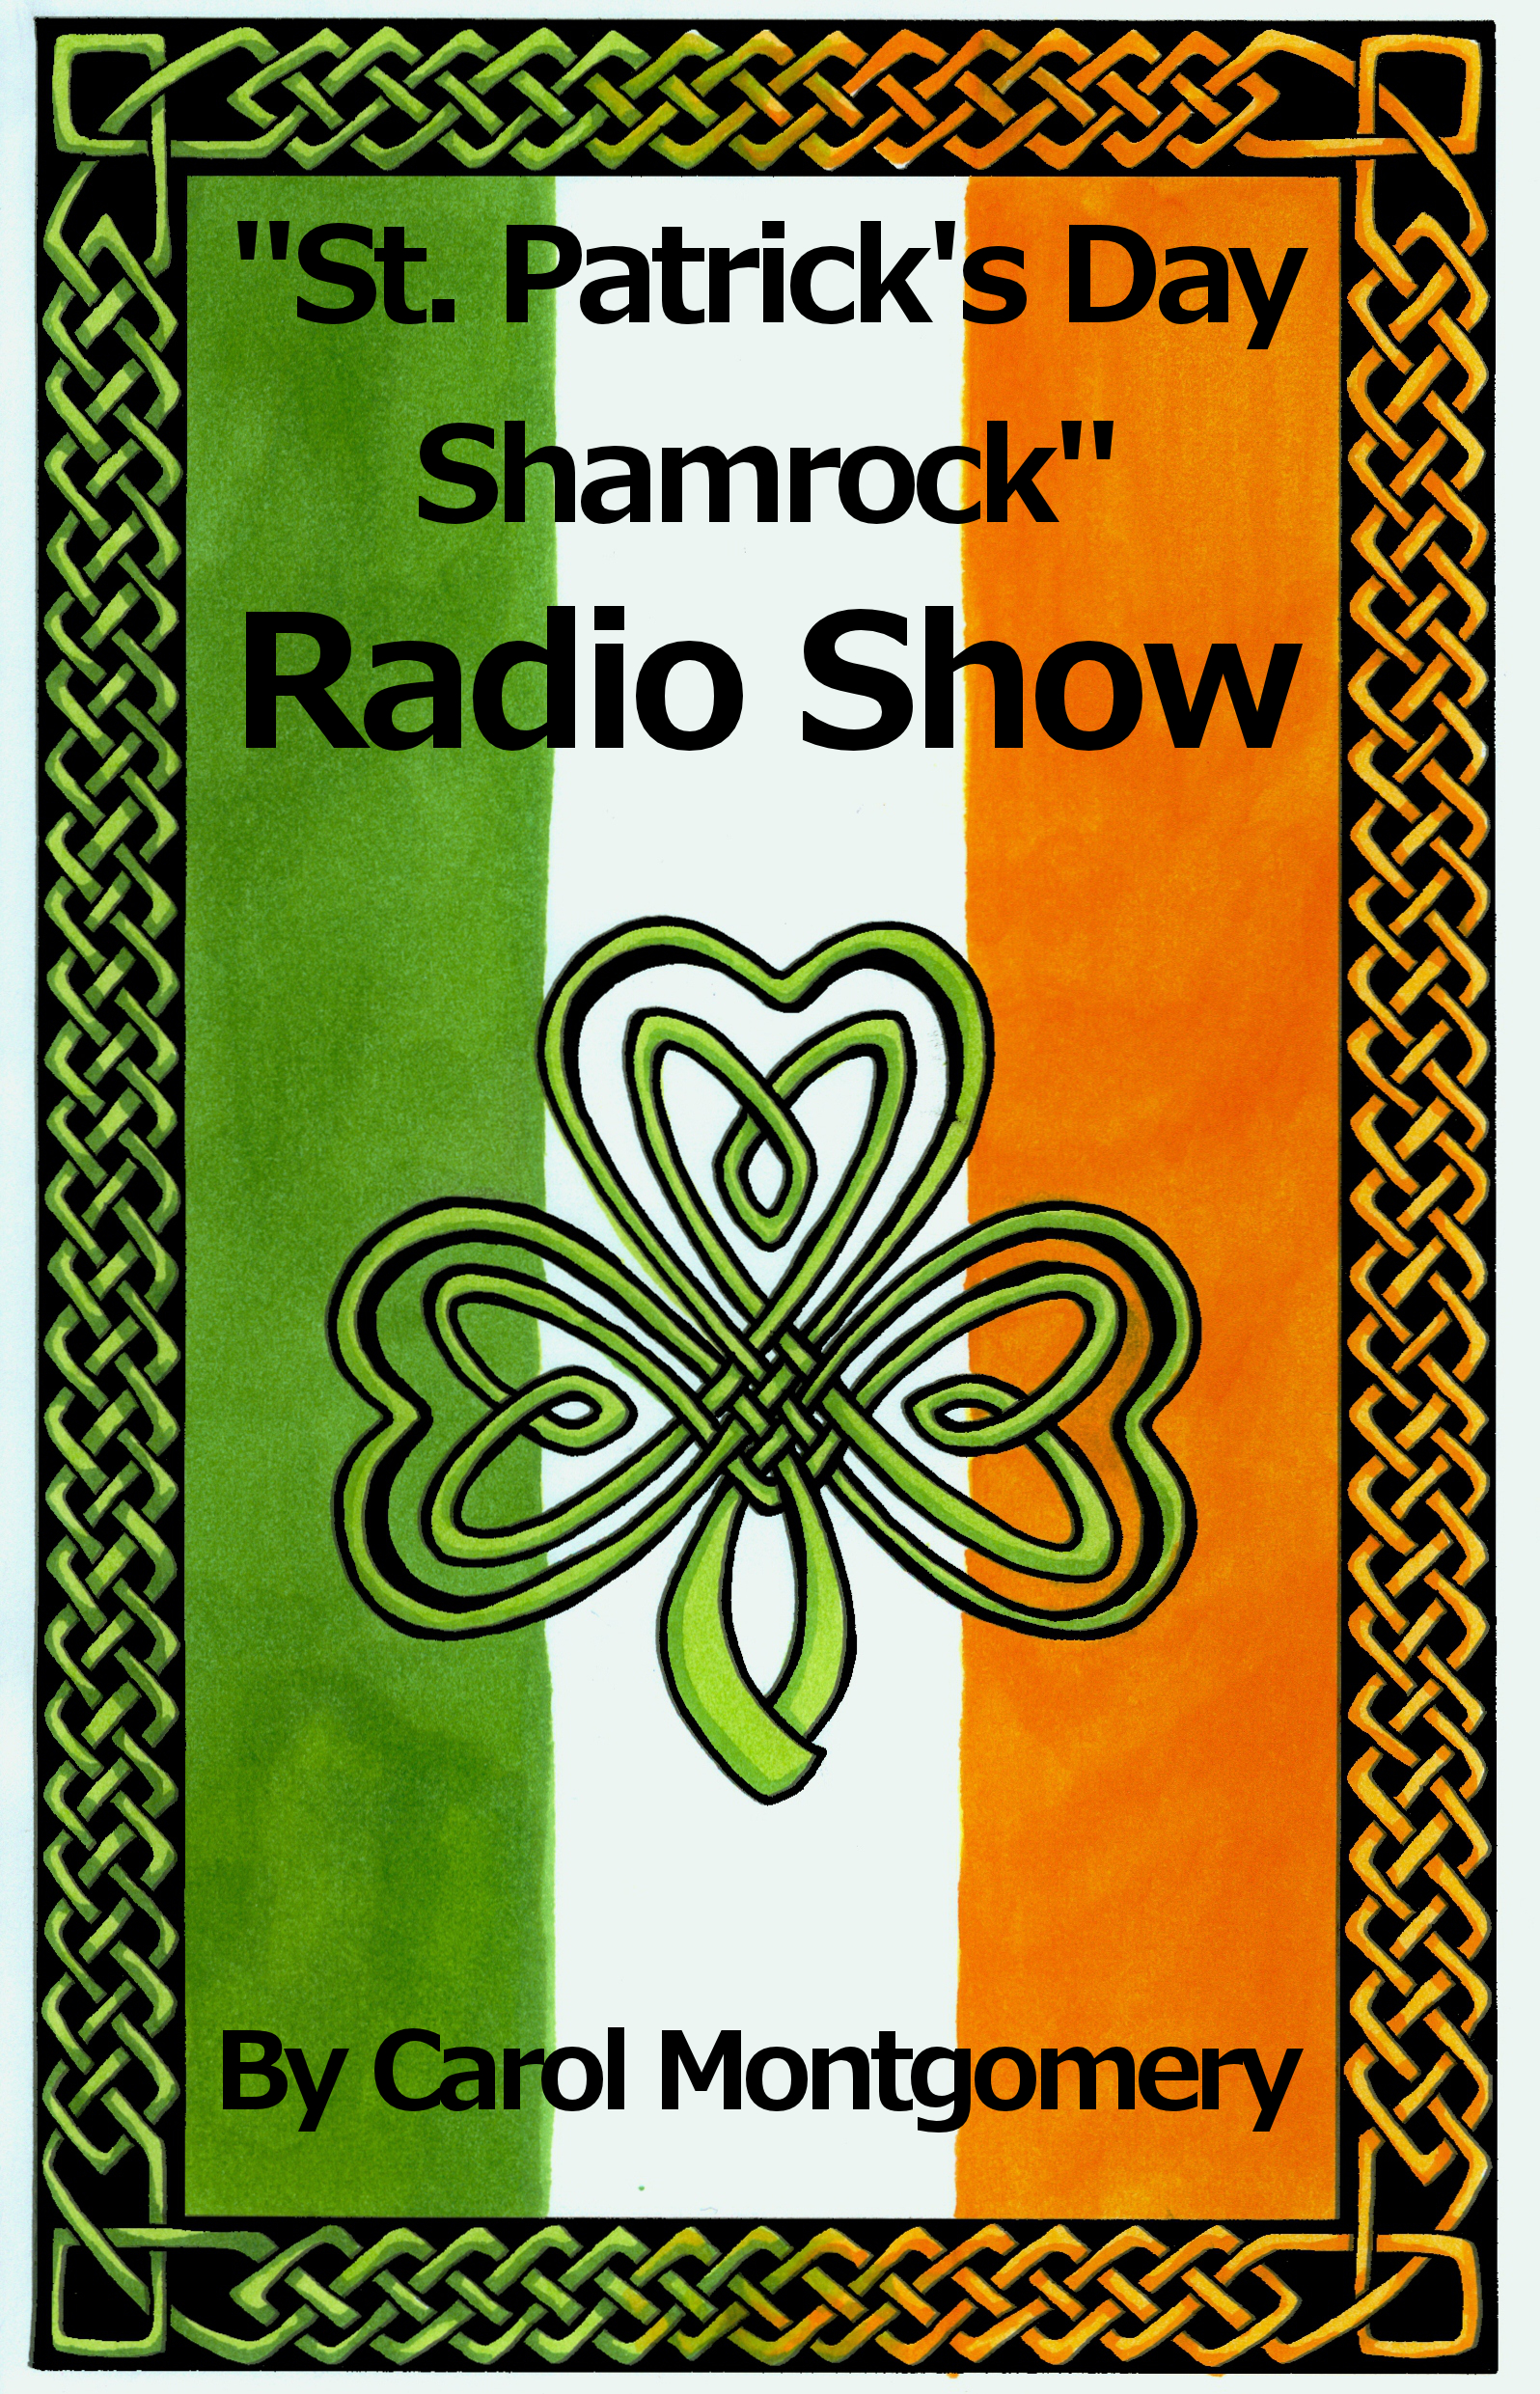 St. Patrick's Day Shamrock Radio Show